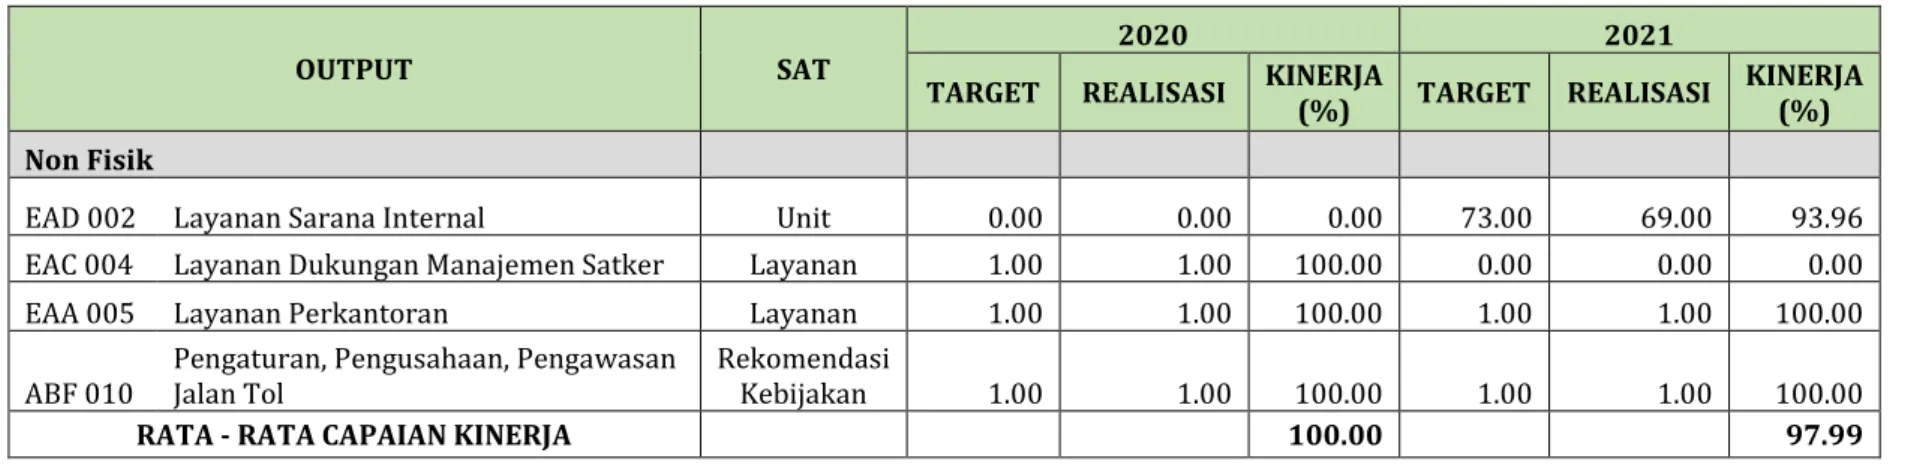 Tabel 4.2.5 Perbandingan Capaian Kinerja Output Tahun 2020-2021